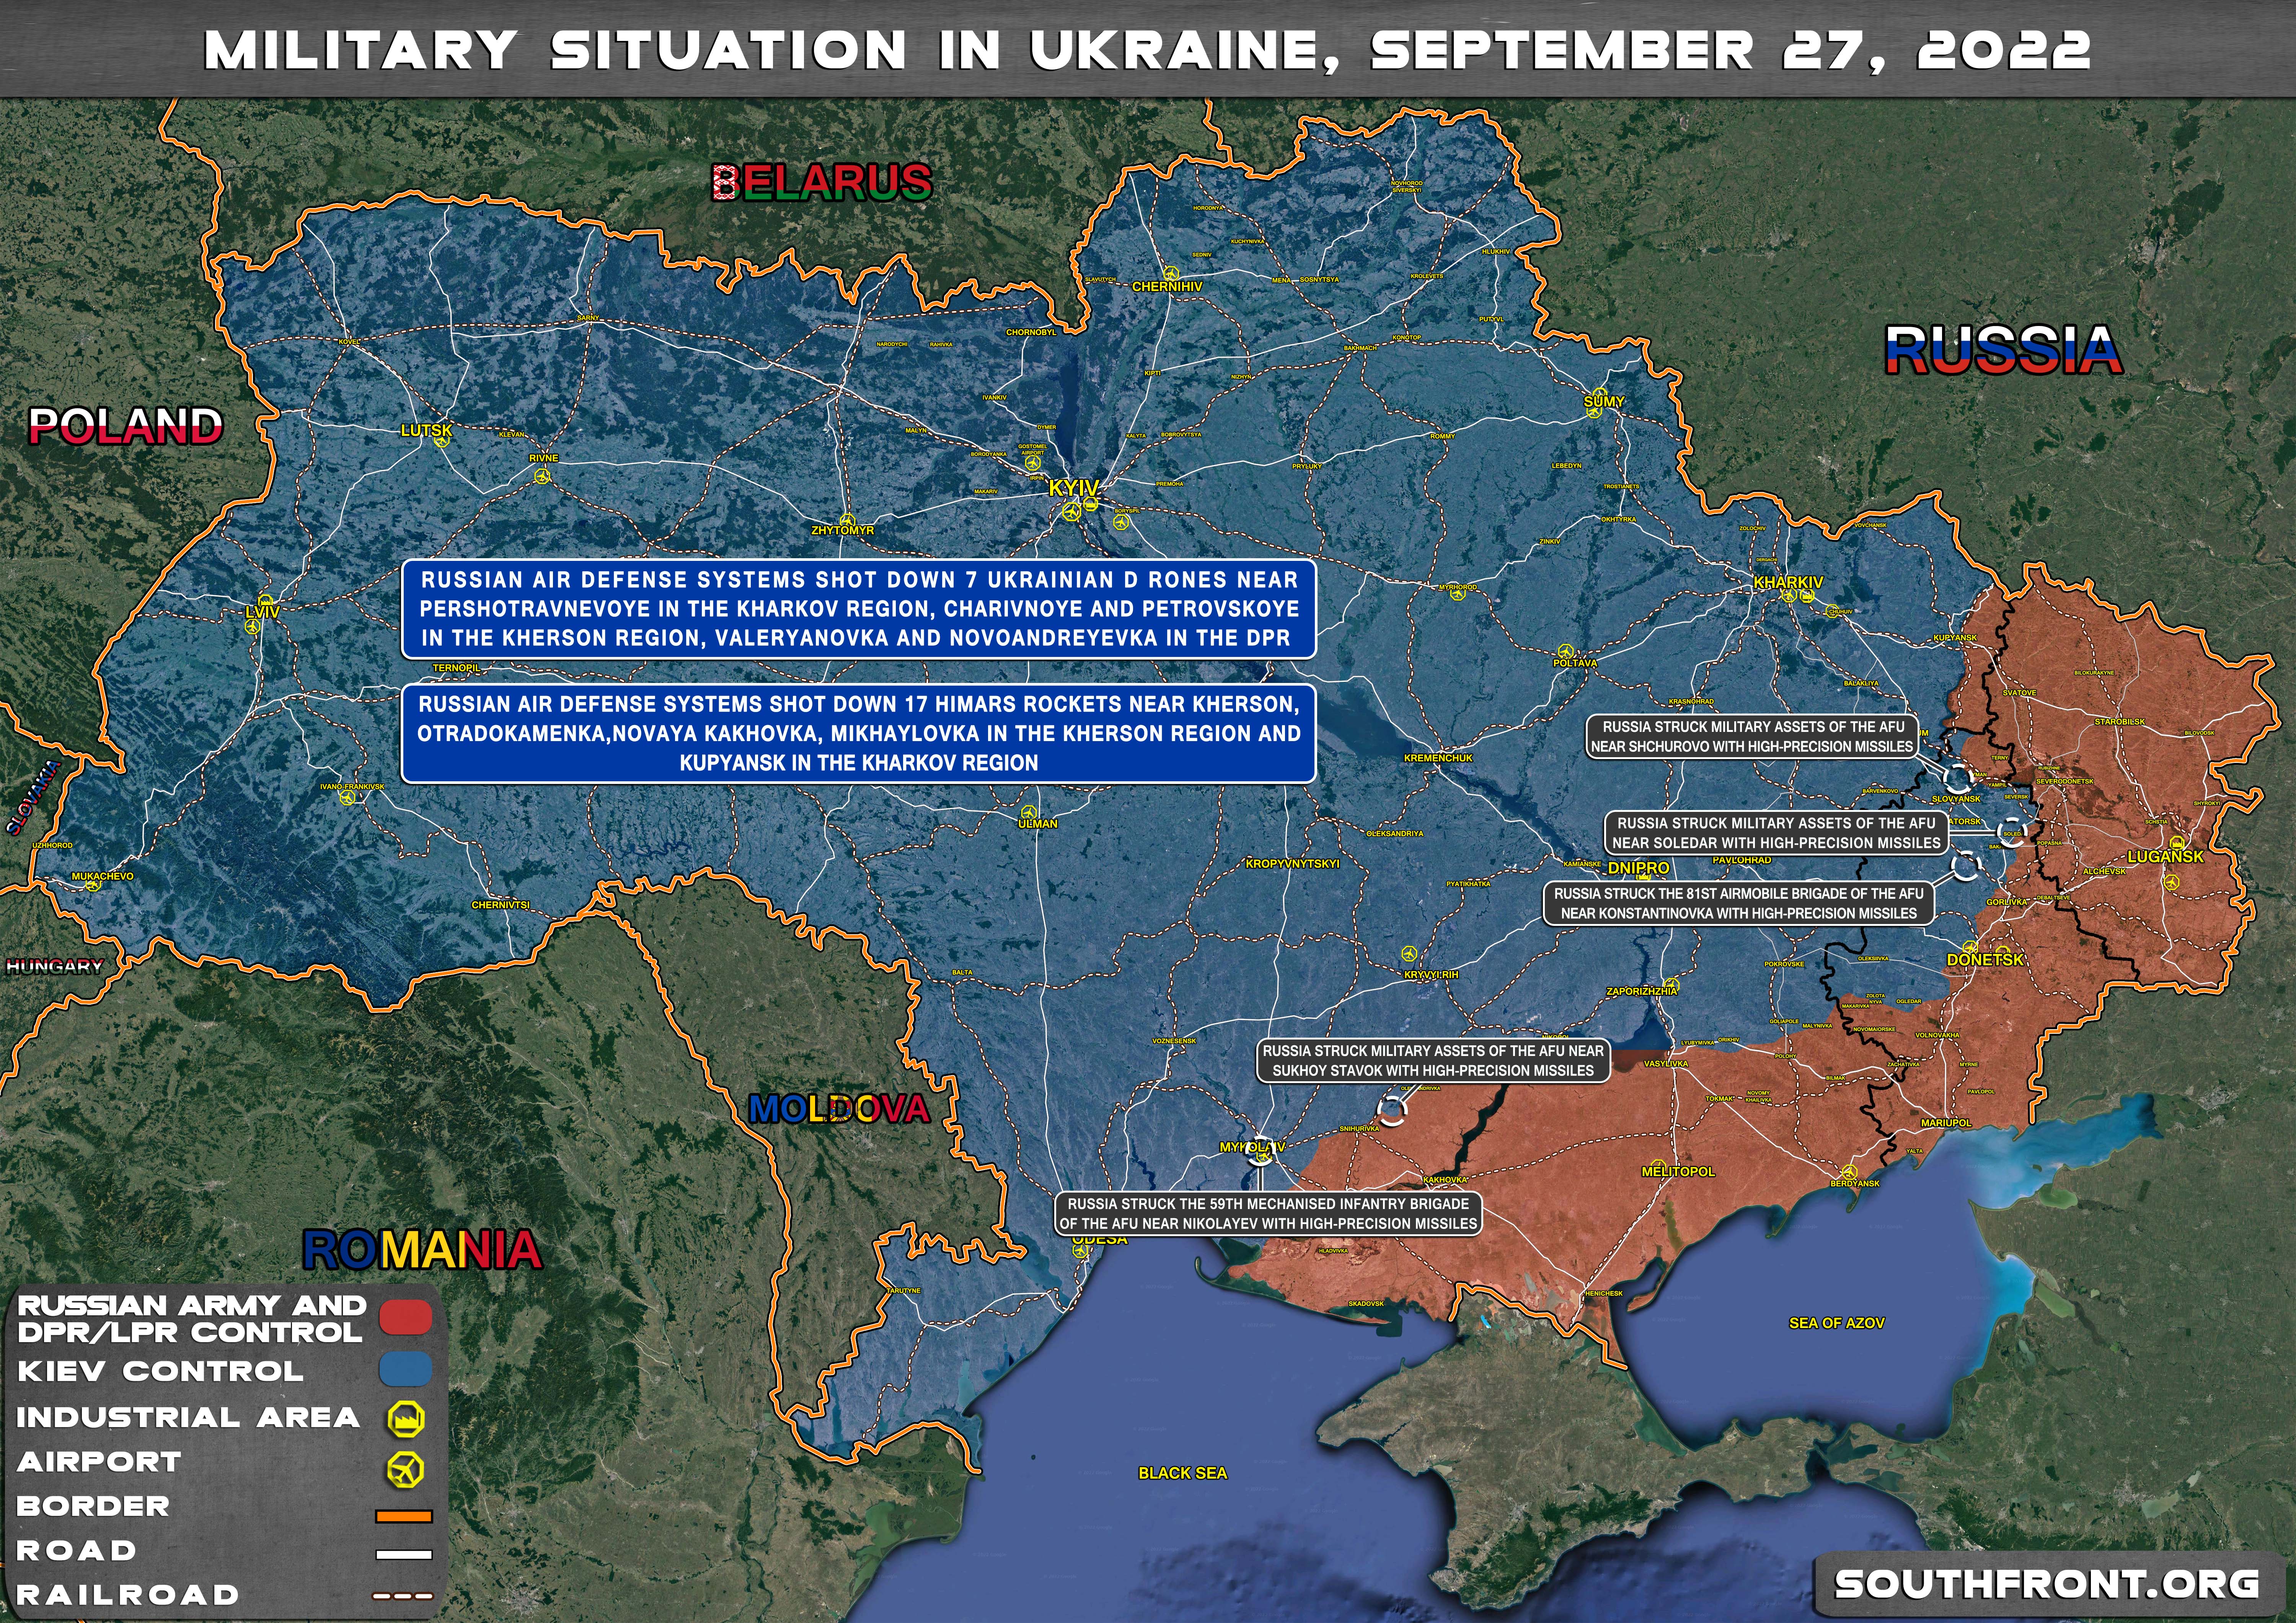 27september2022_Ukraine_map.jpg